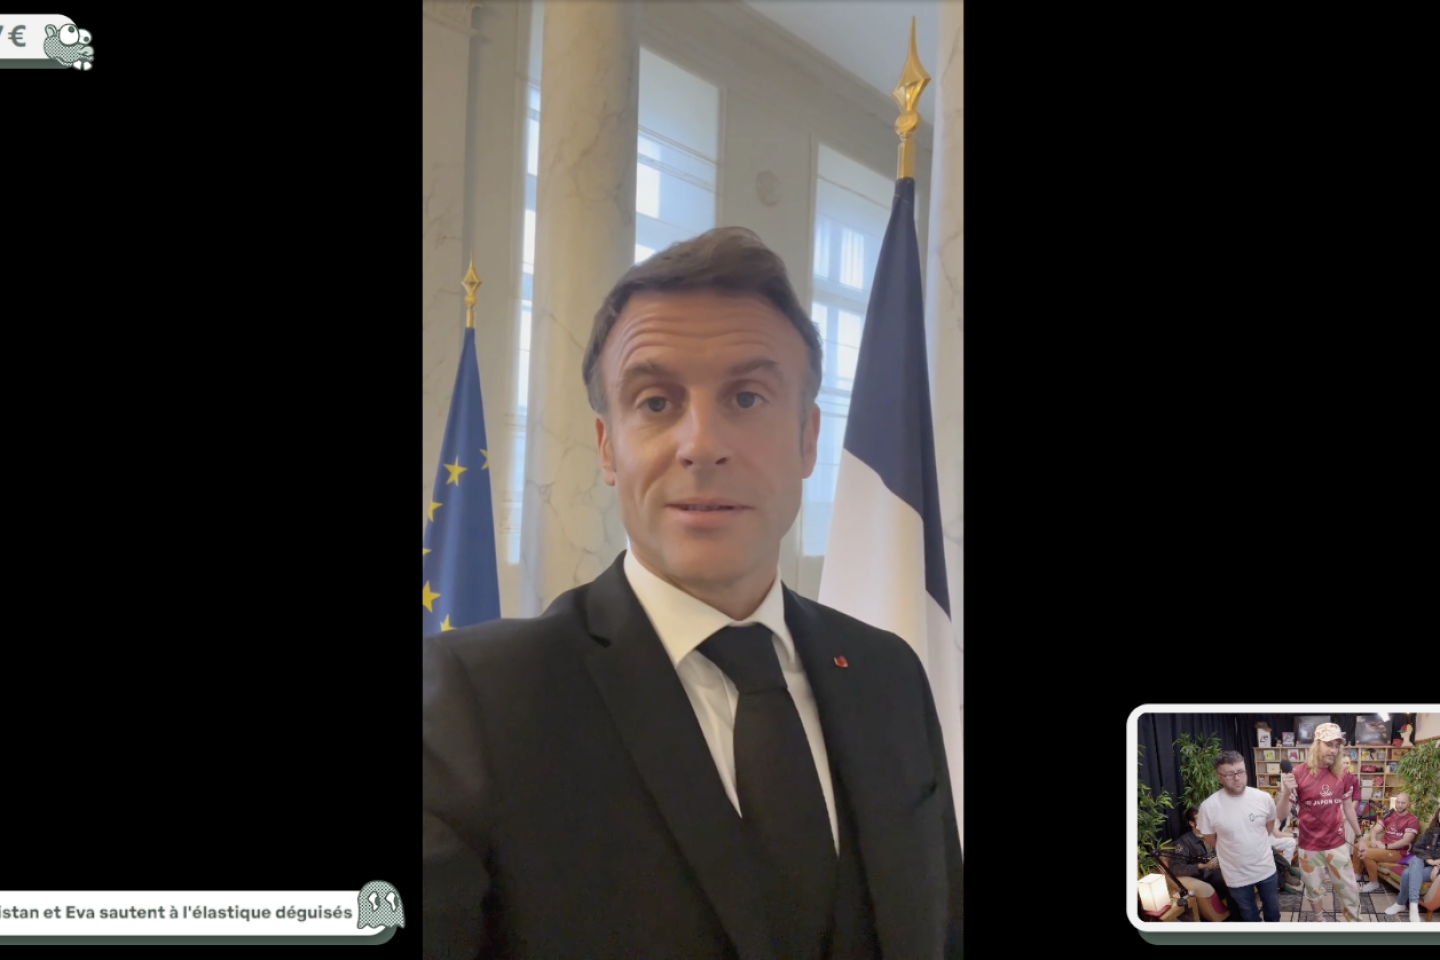 Emmanuel Macron sostiene un progetto di museo dei videogiochi lanciato da uno YouTuber